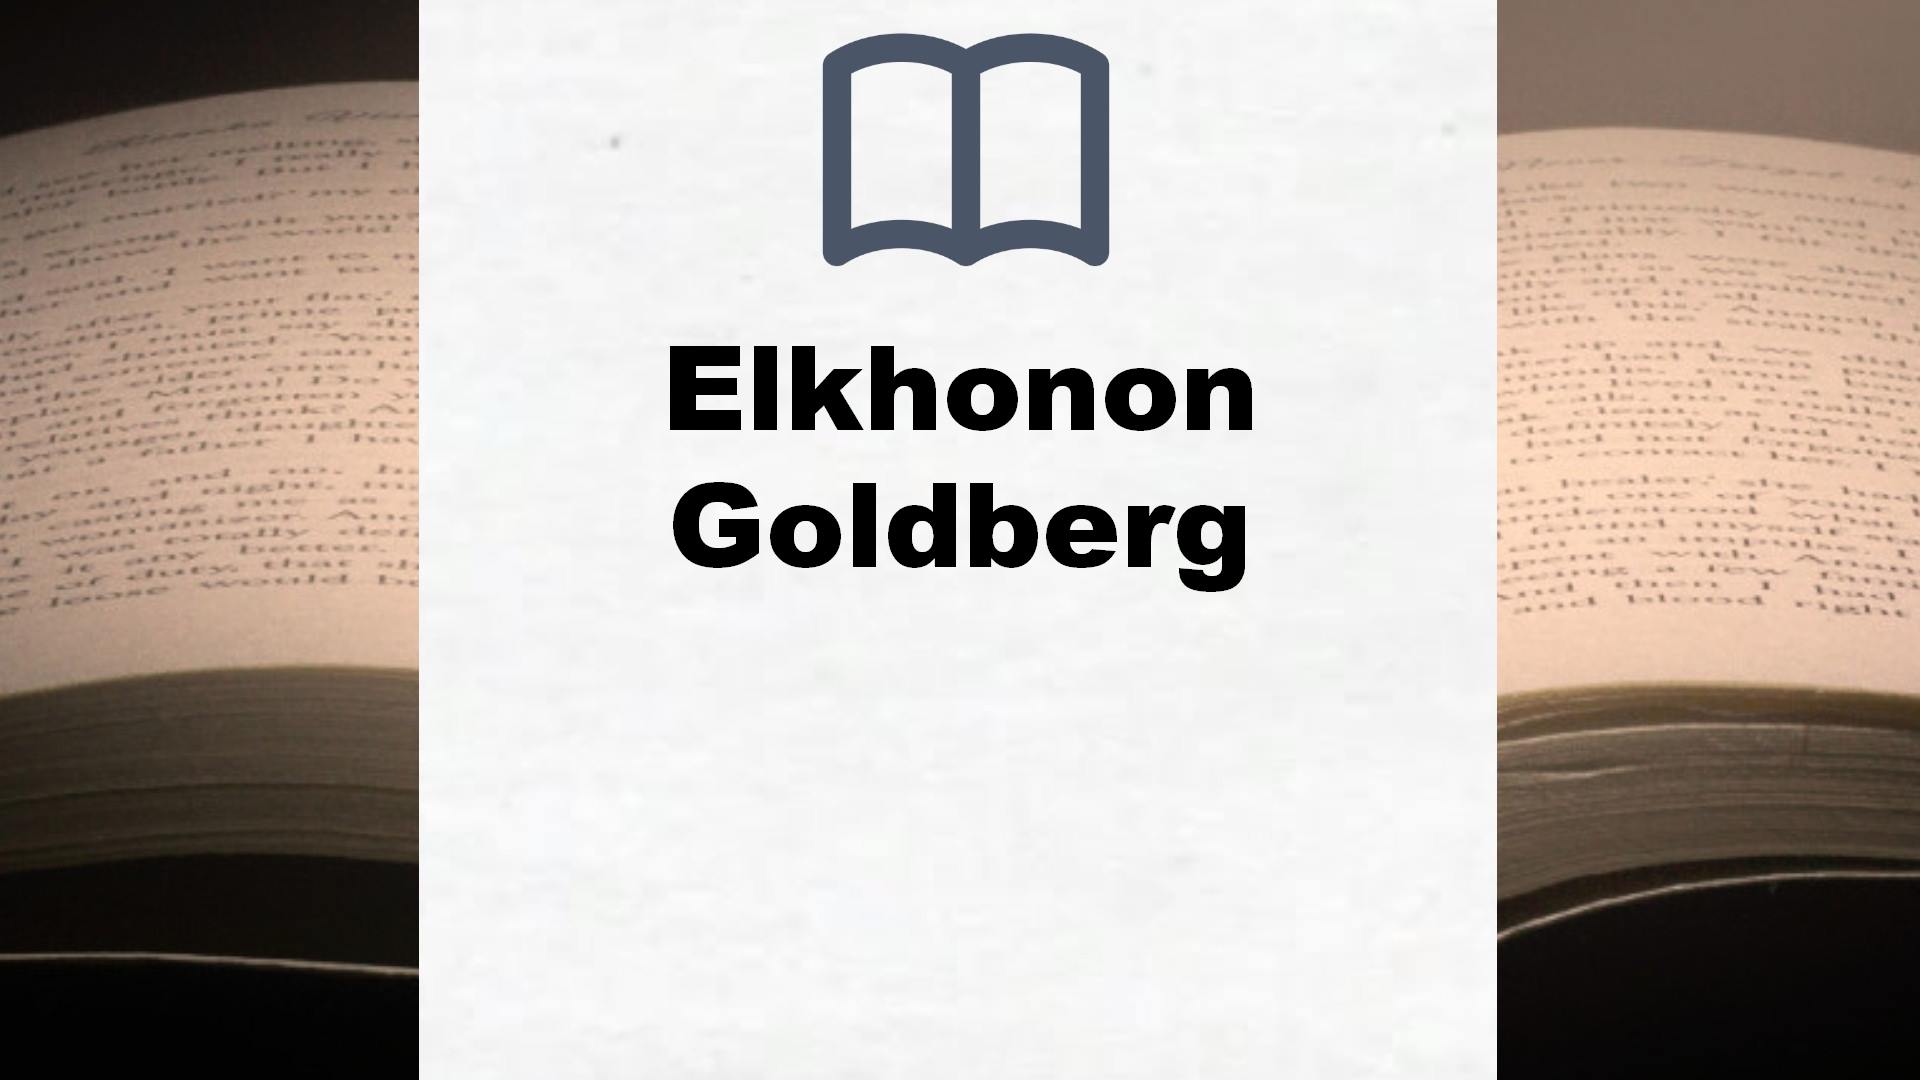 Libros Elkhonon Goldberg